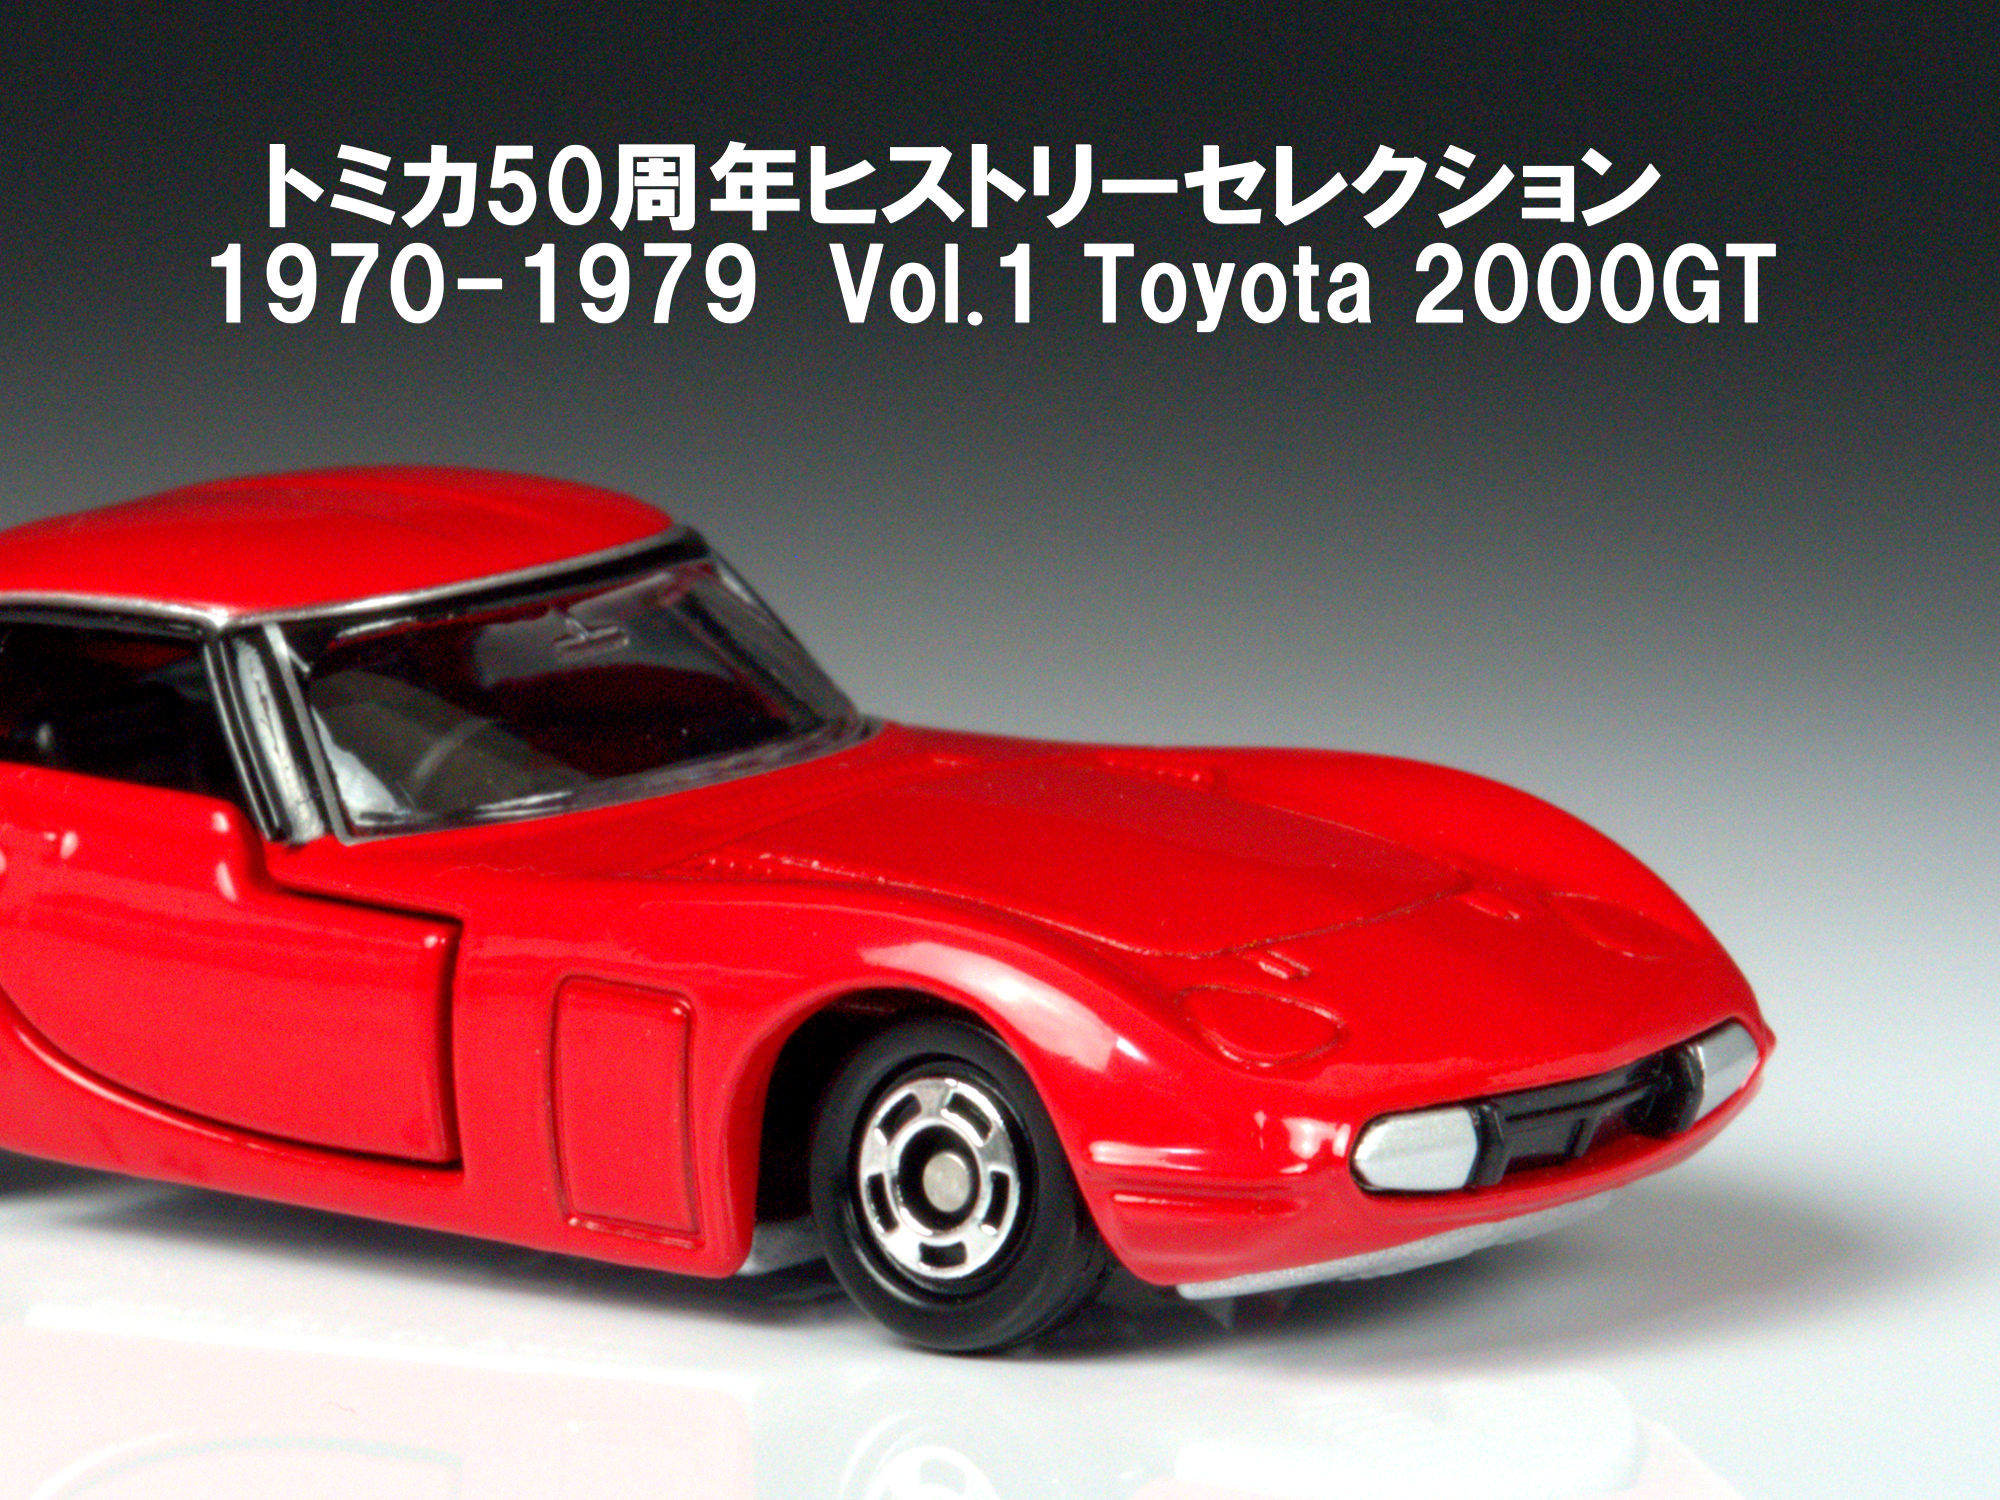 トミカ トヨタ 2000GT 【トミカ50周年 ヒストリーセレクション Vol.1